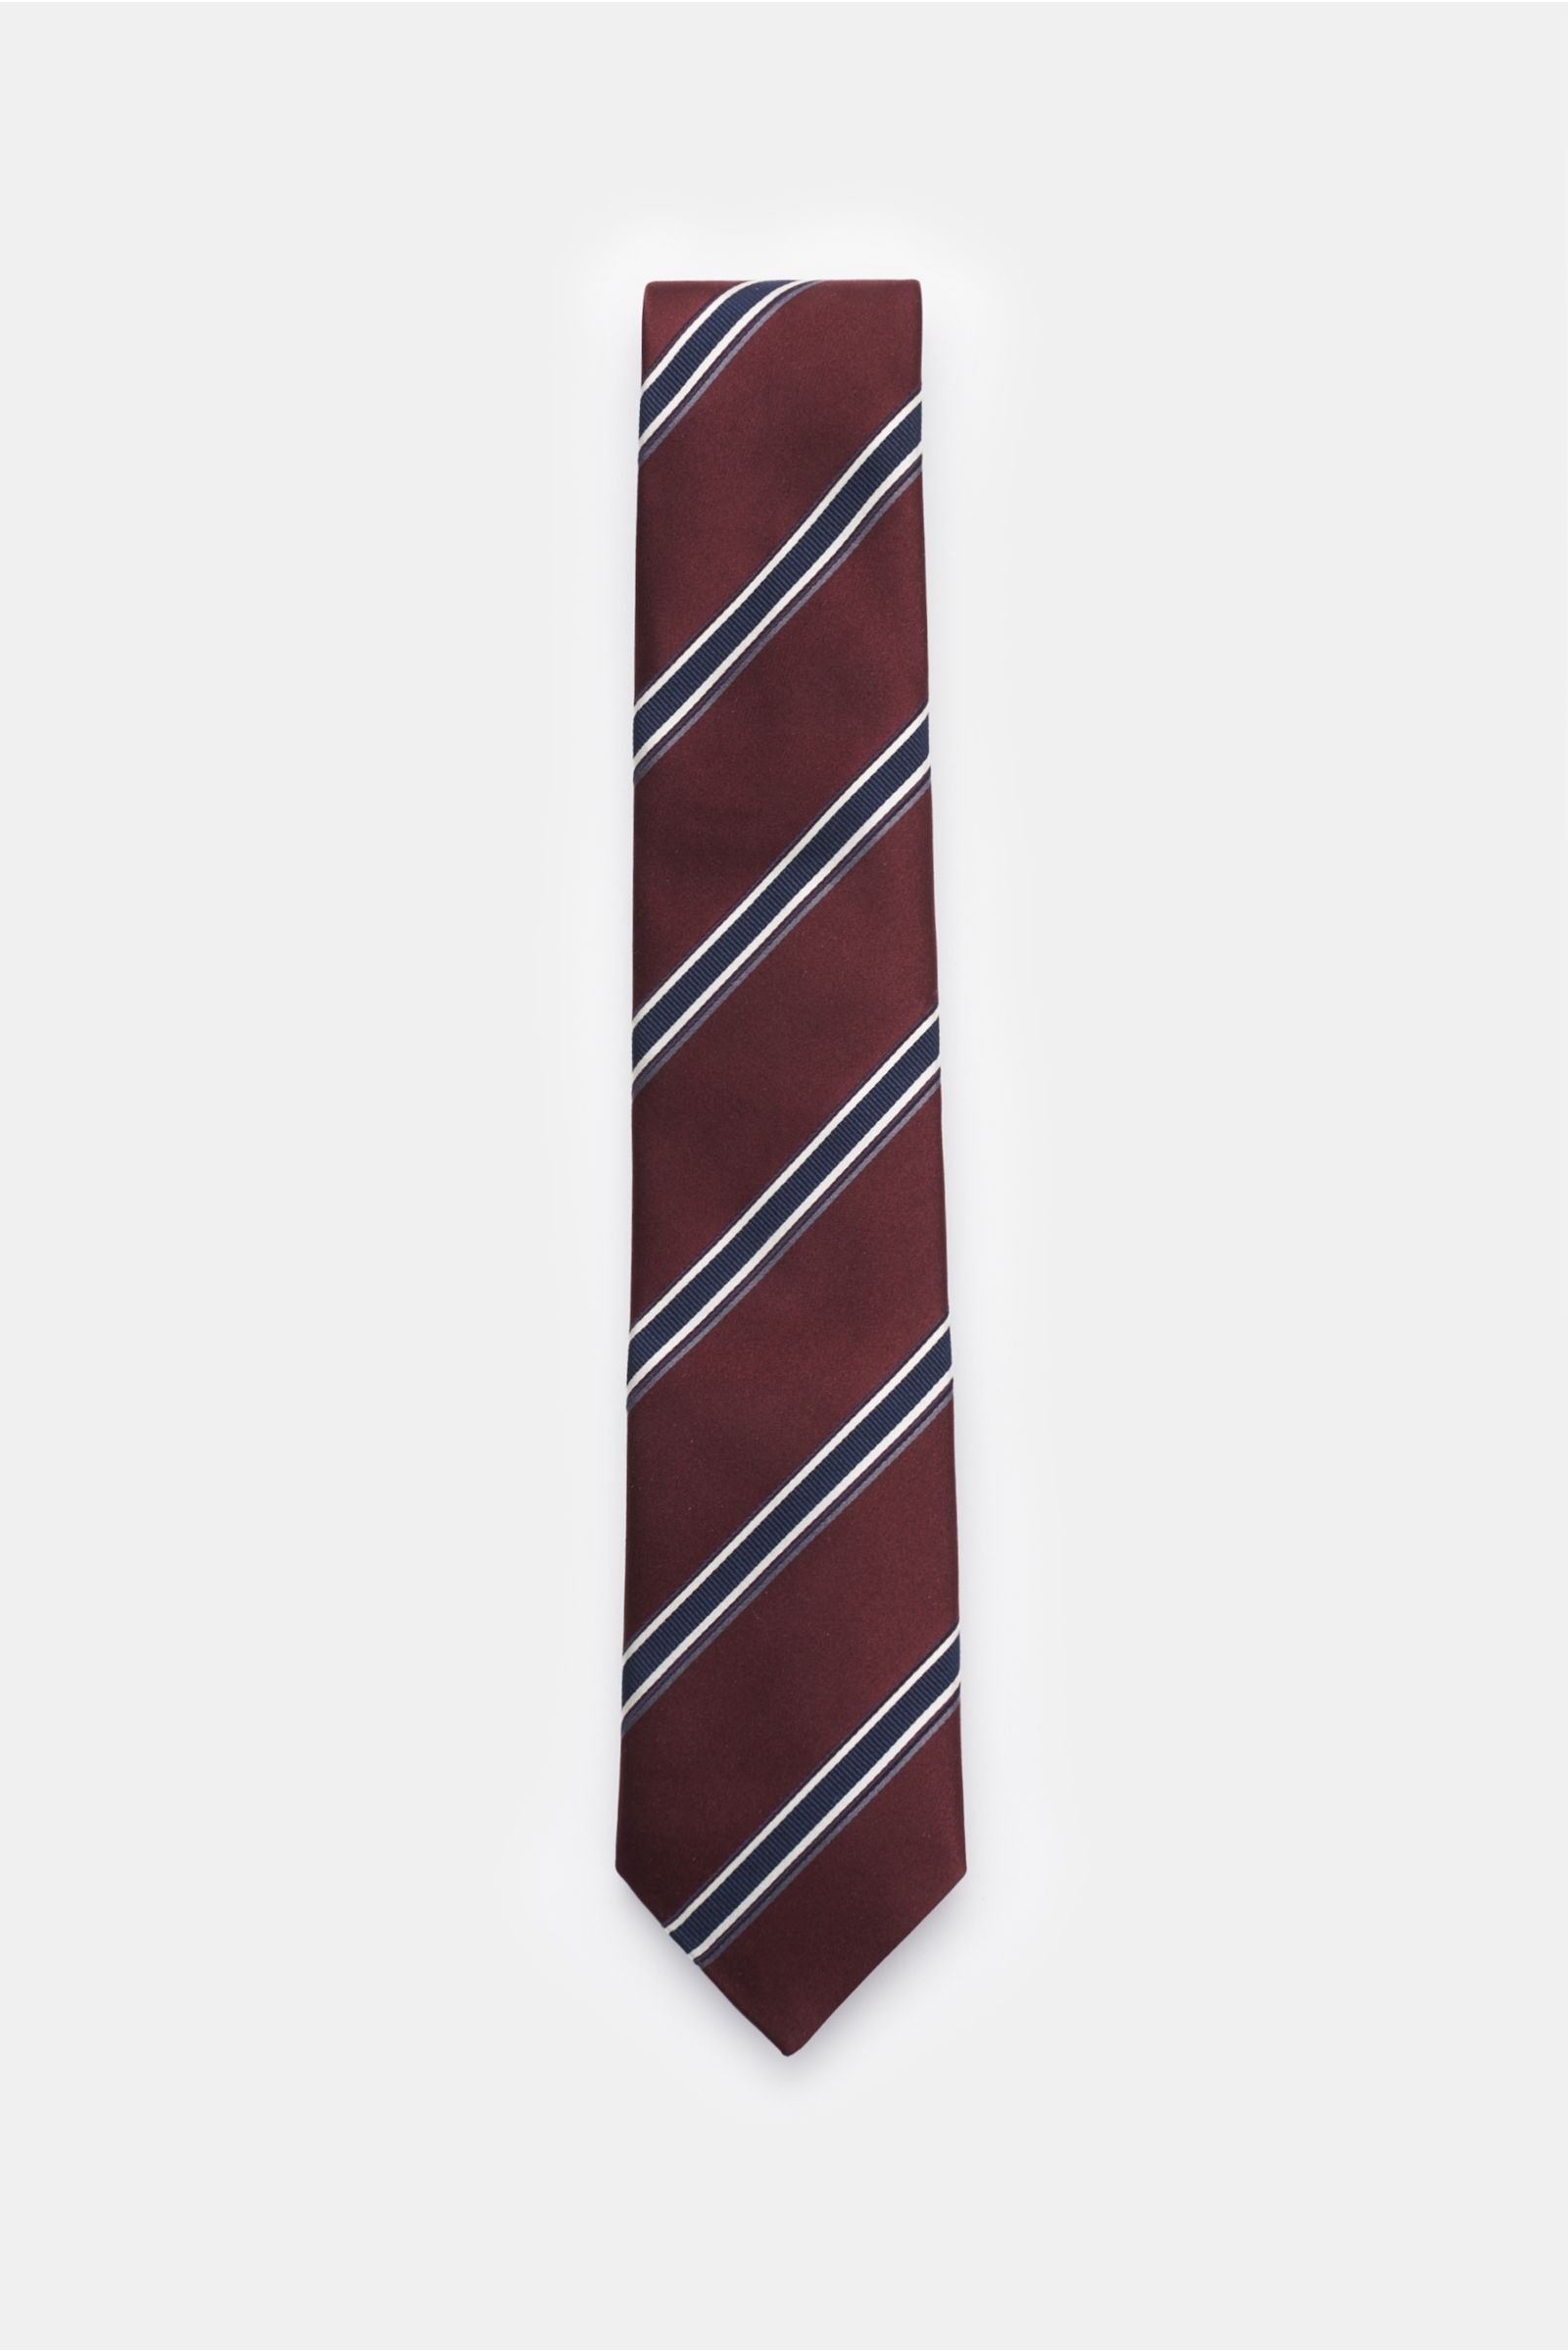 Silk tie burgundy/navy striped